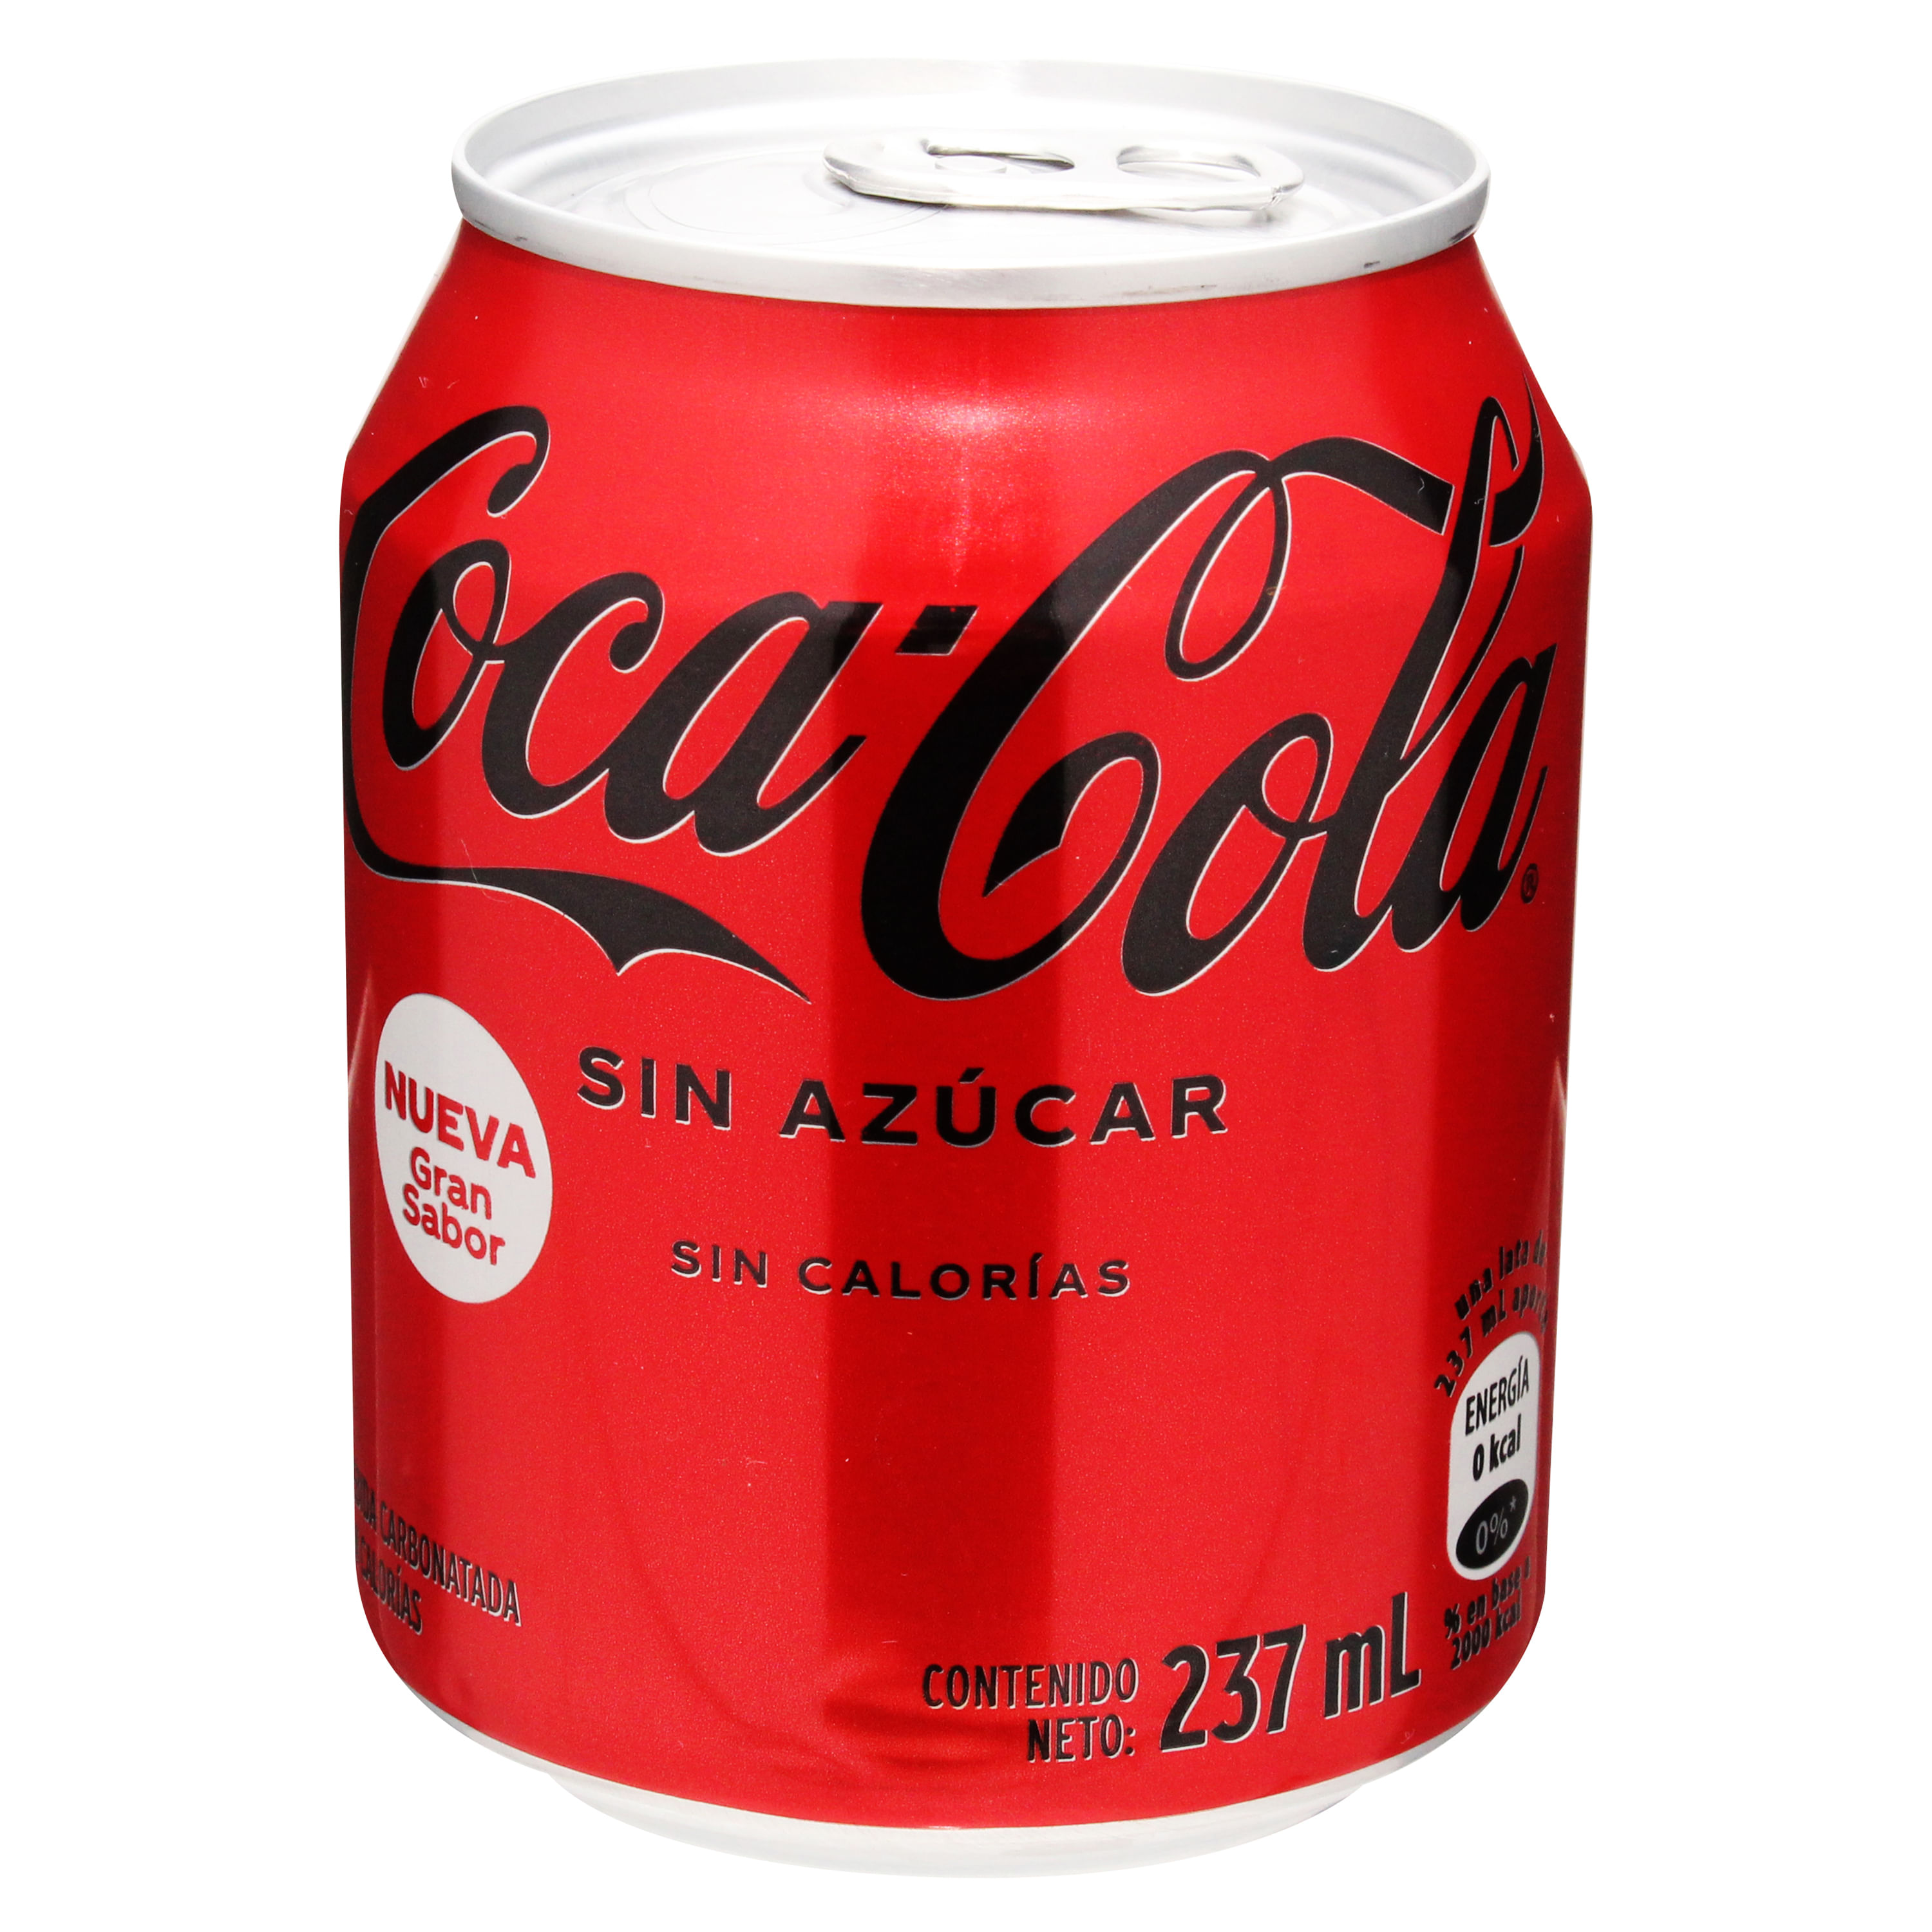 Comprar 12 Pack Gaseosa Coca Cola Mini Lata - 2844Ml